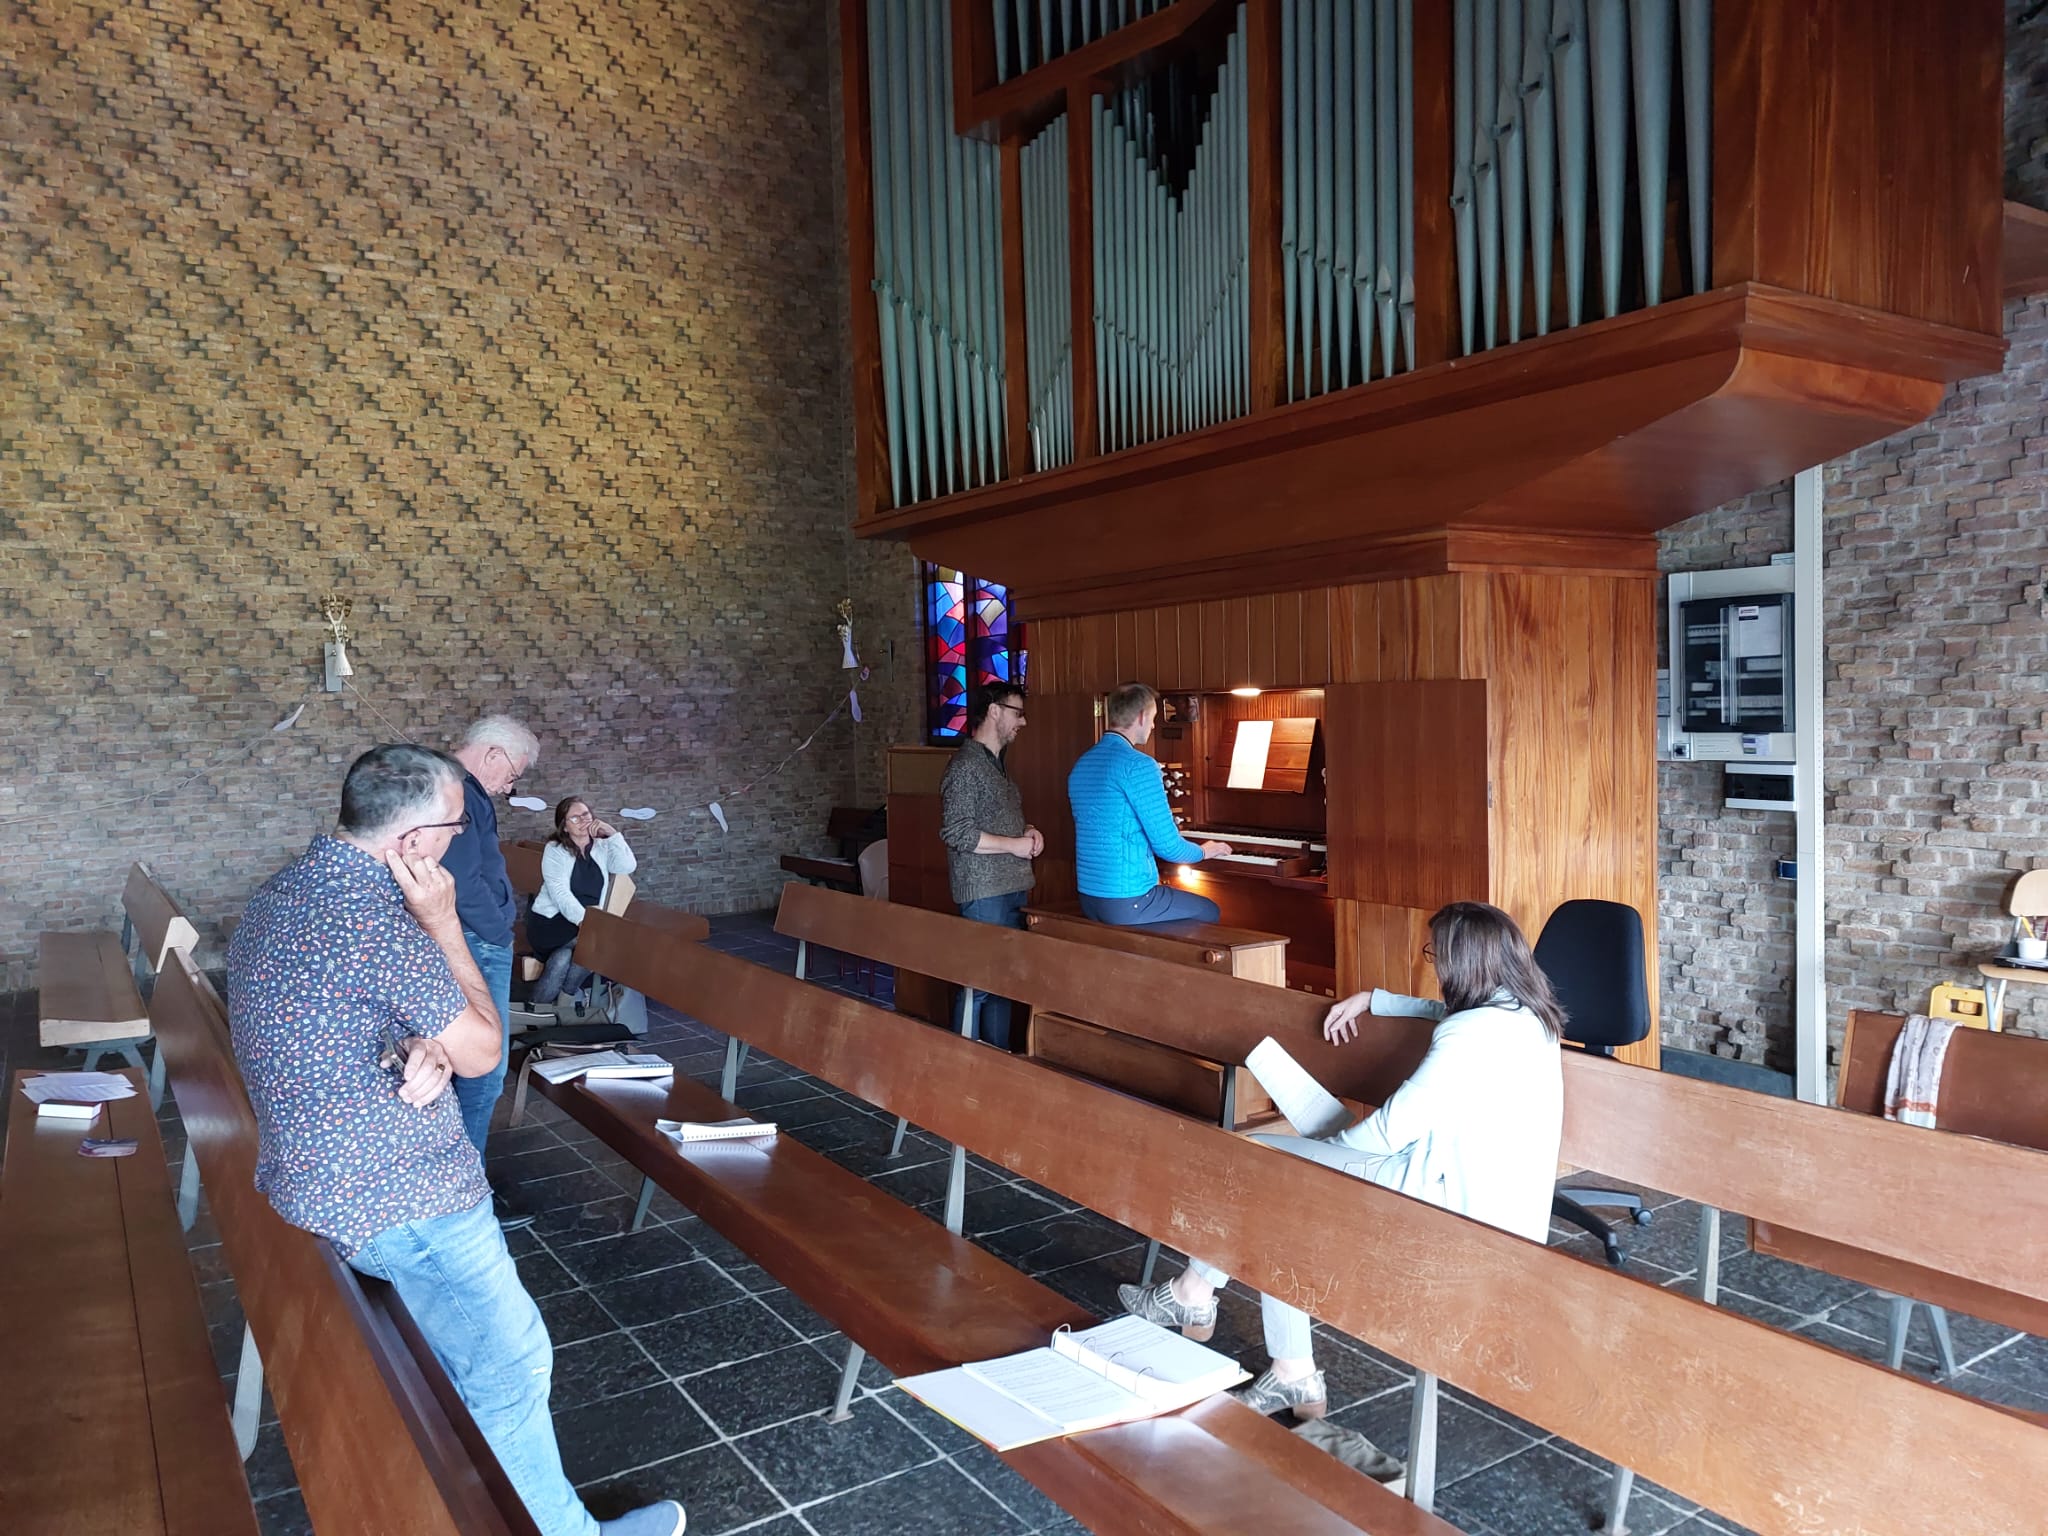 Praktijkcursus Muziek in de Kerk. Hoe zorg je ervoor de een gemeente prettig kan zingen? www.harryvanwijk.nl/cursus